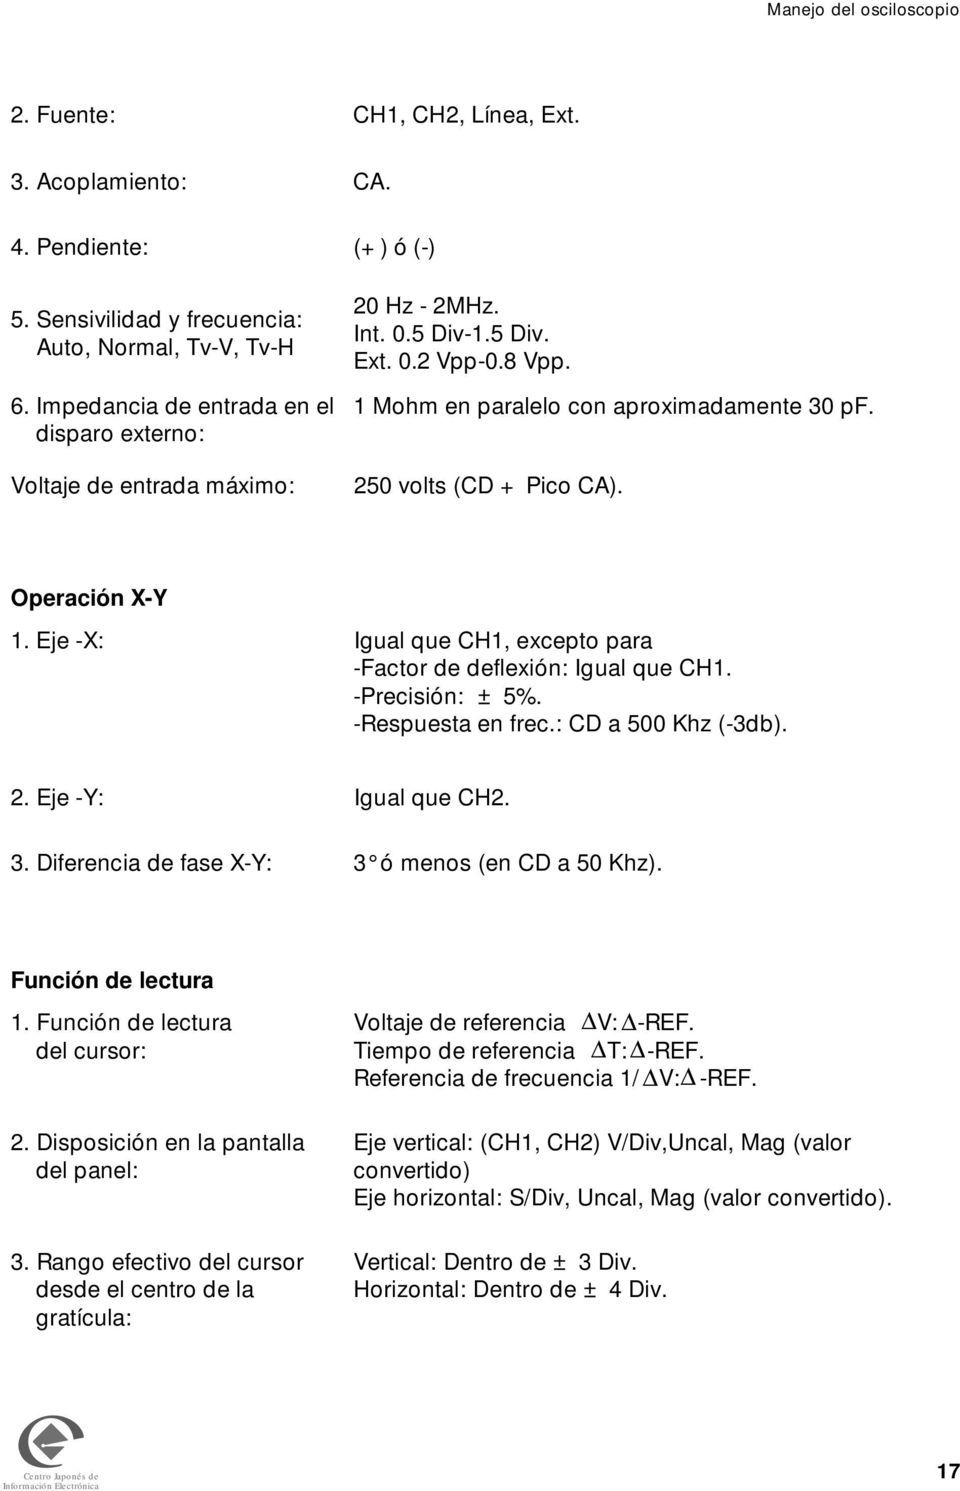 250 volts (CD + Pico CA). Operación X-Y 1. Eje -X: Igual que CH1, excepto para -Factor de deflexión: Igual que CH1. -Precisión: ± 5%. -Respuesta en frec.: CD a 500 Khz (-3db). 2.